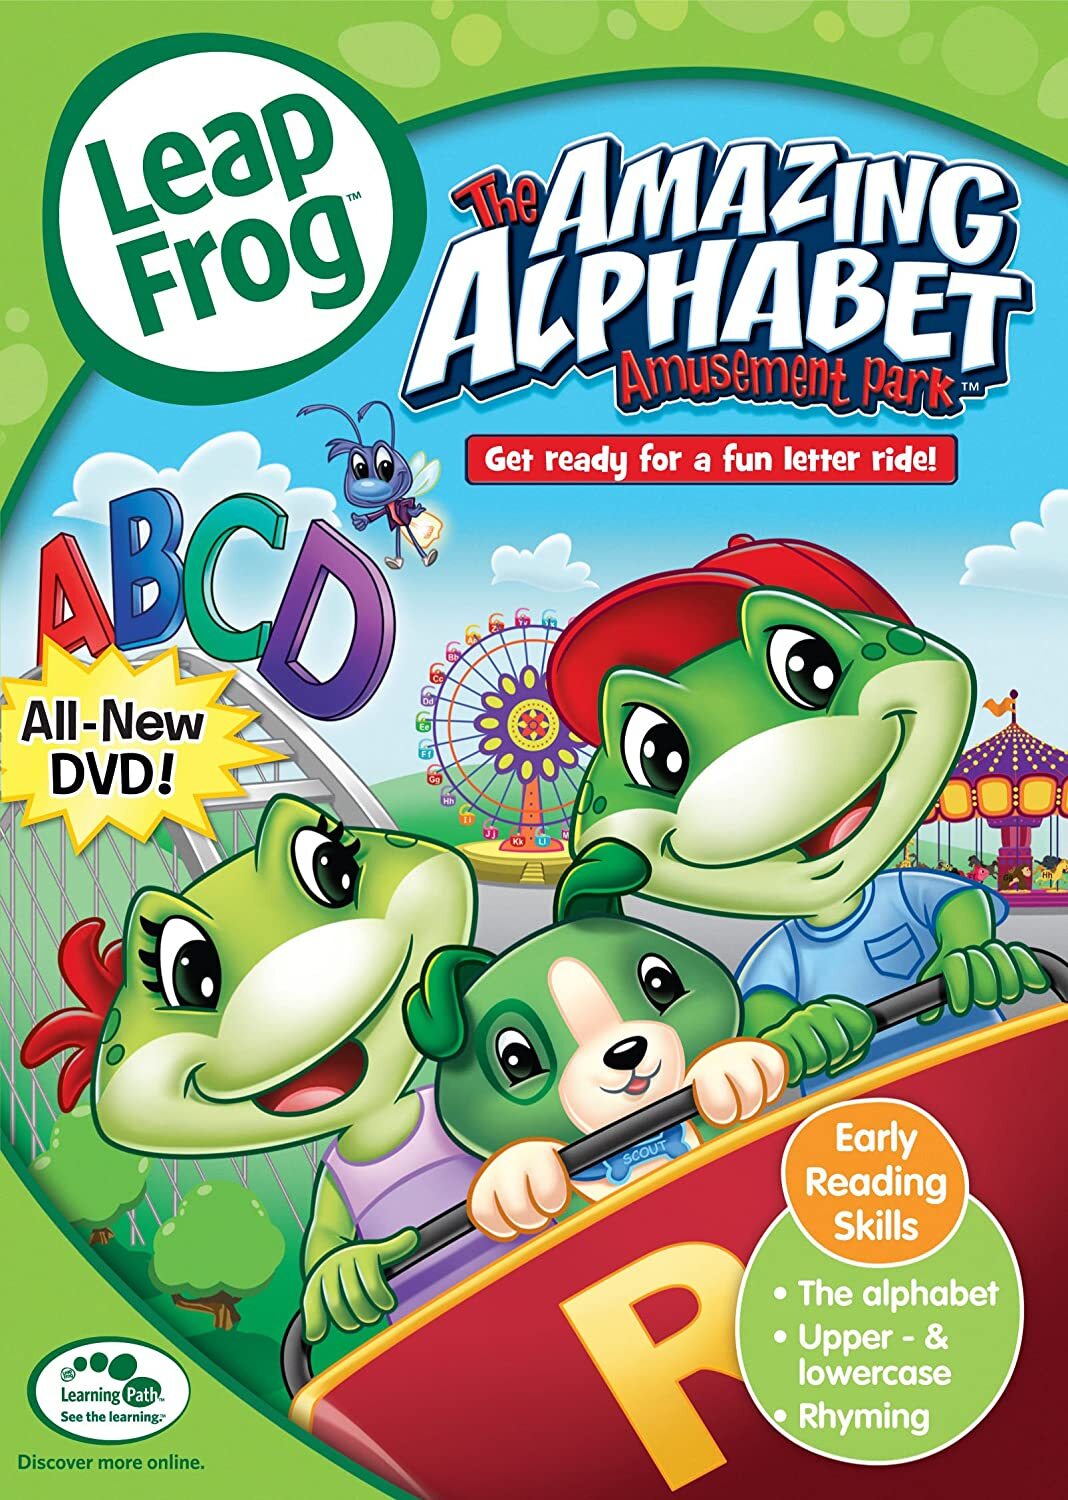 Leap Frog: The Amazing Alphabet Amusement Park DVD